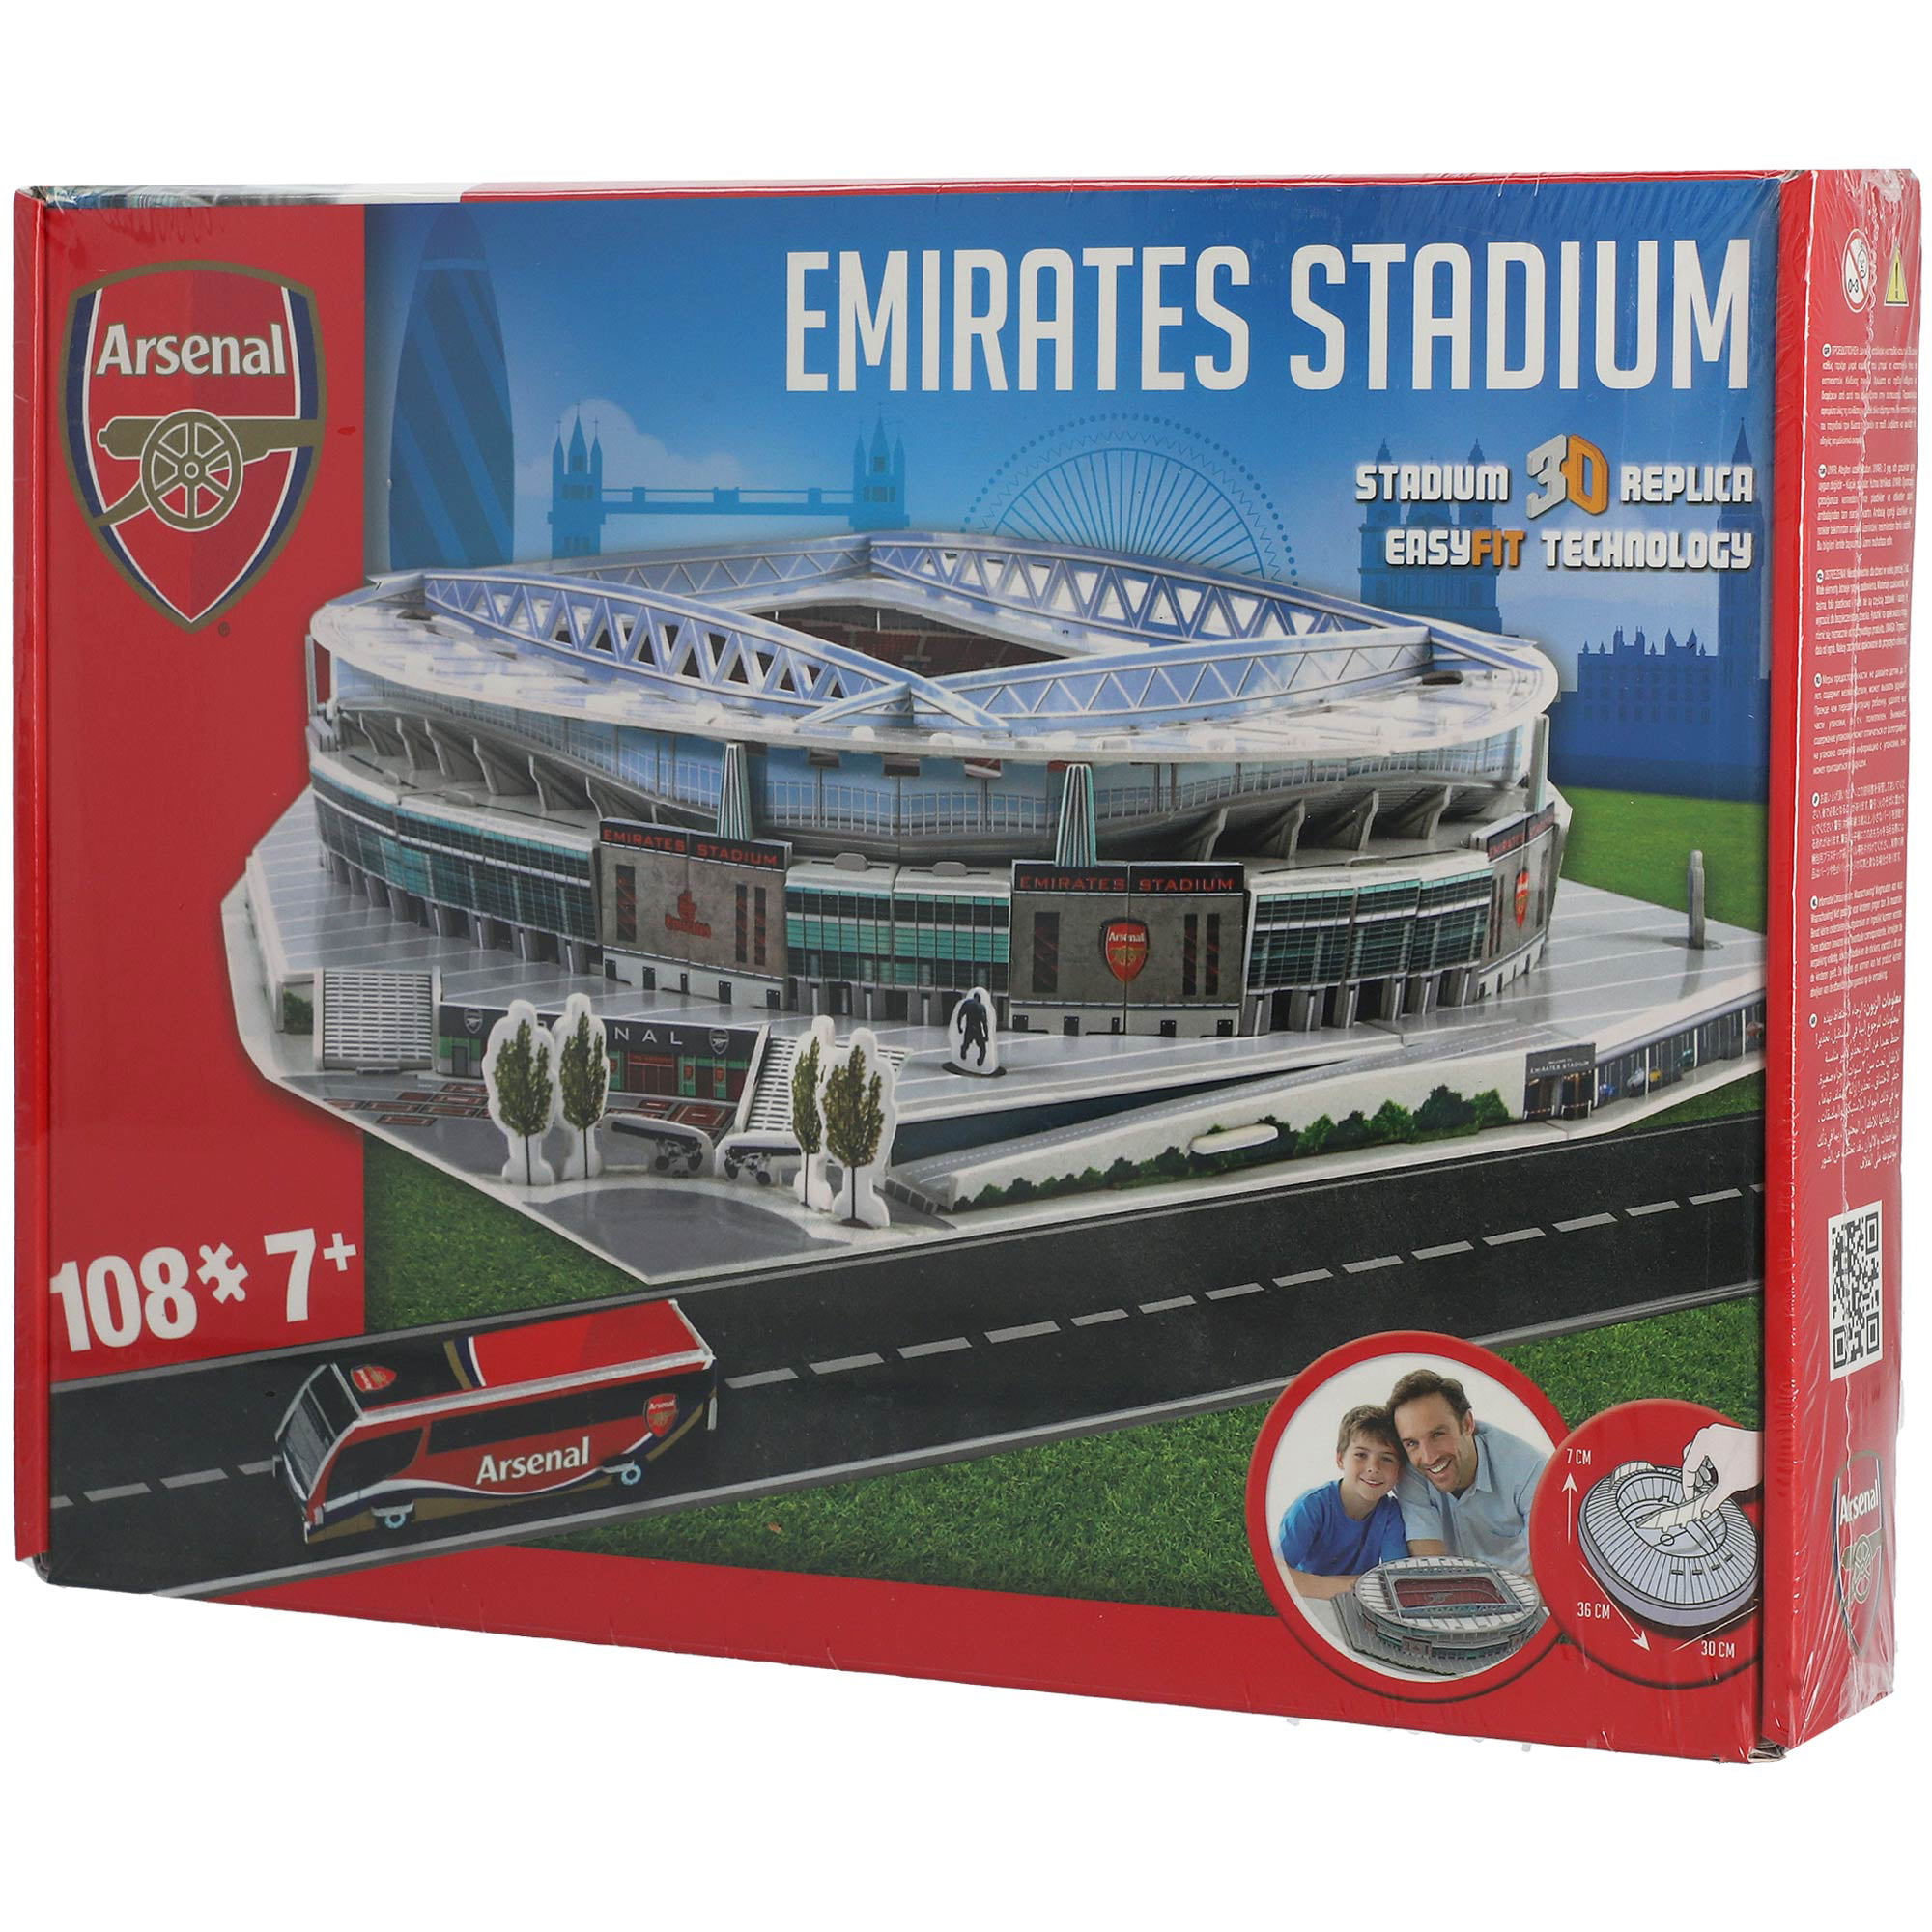 3D Puzzle Emirates Stadium-Arsenal 